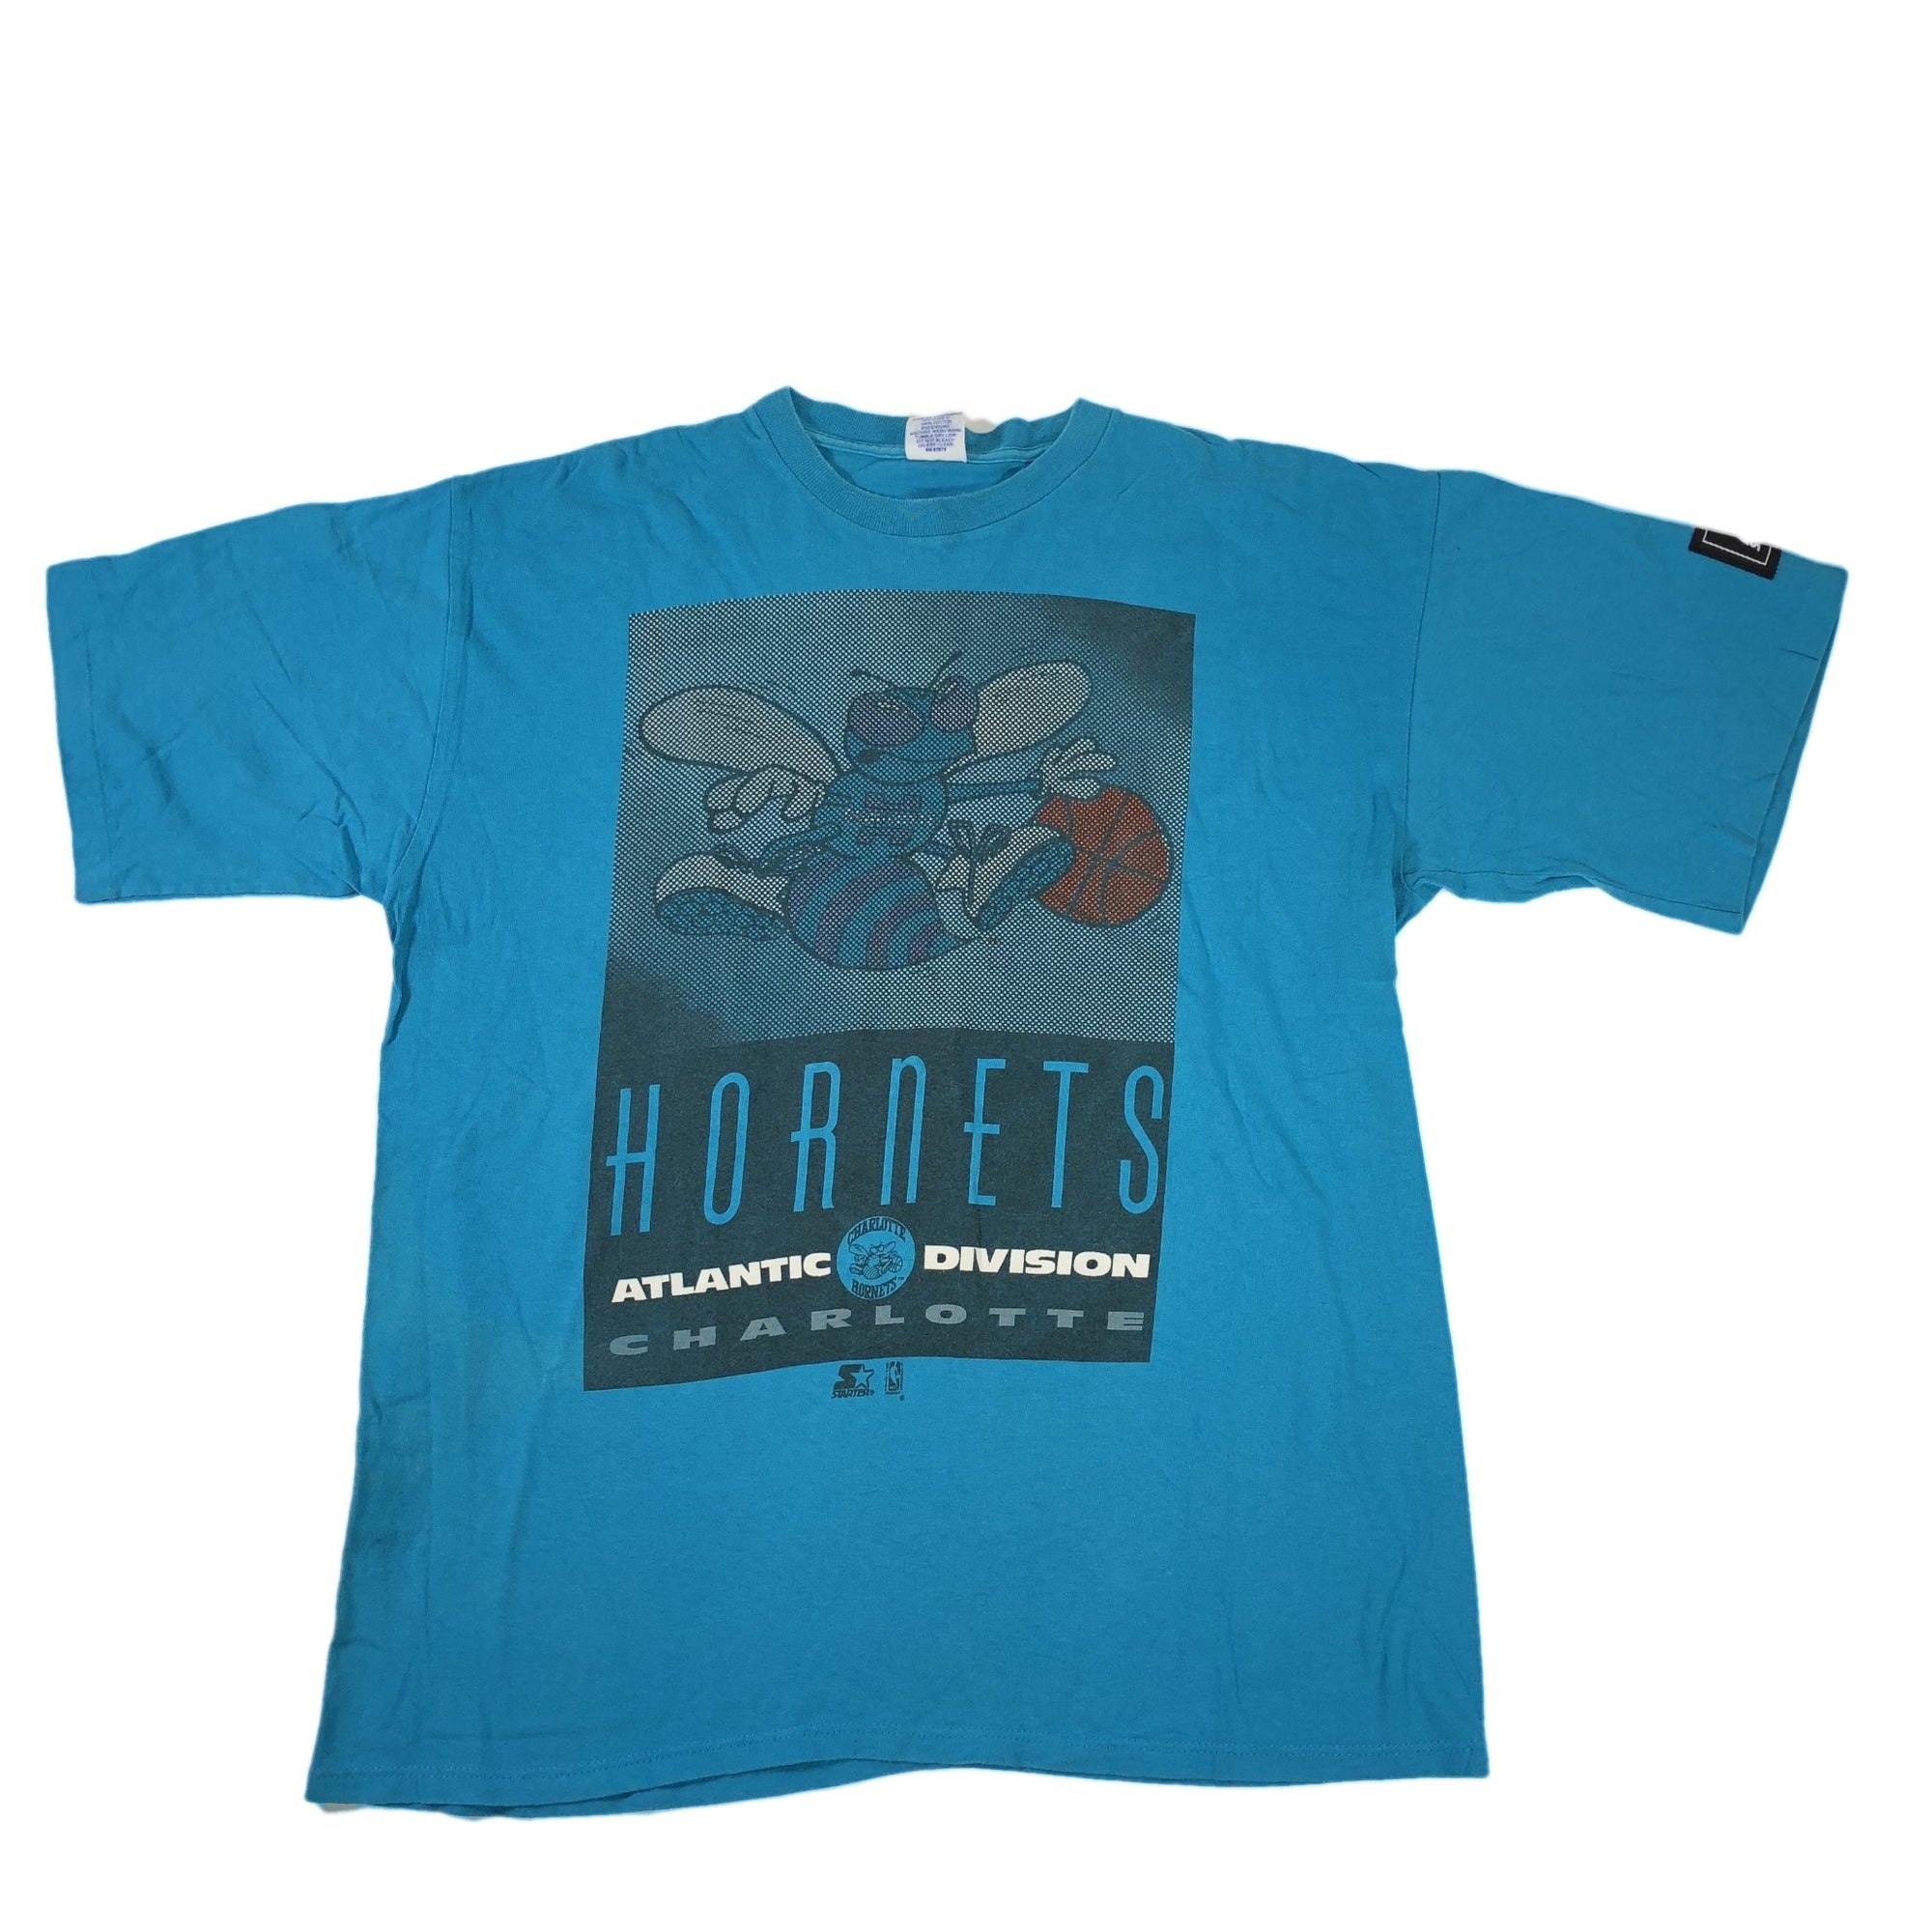 Vintage Charlotte Hornets "Atlantic Division" Starter T-Shirt - jointcustodydc